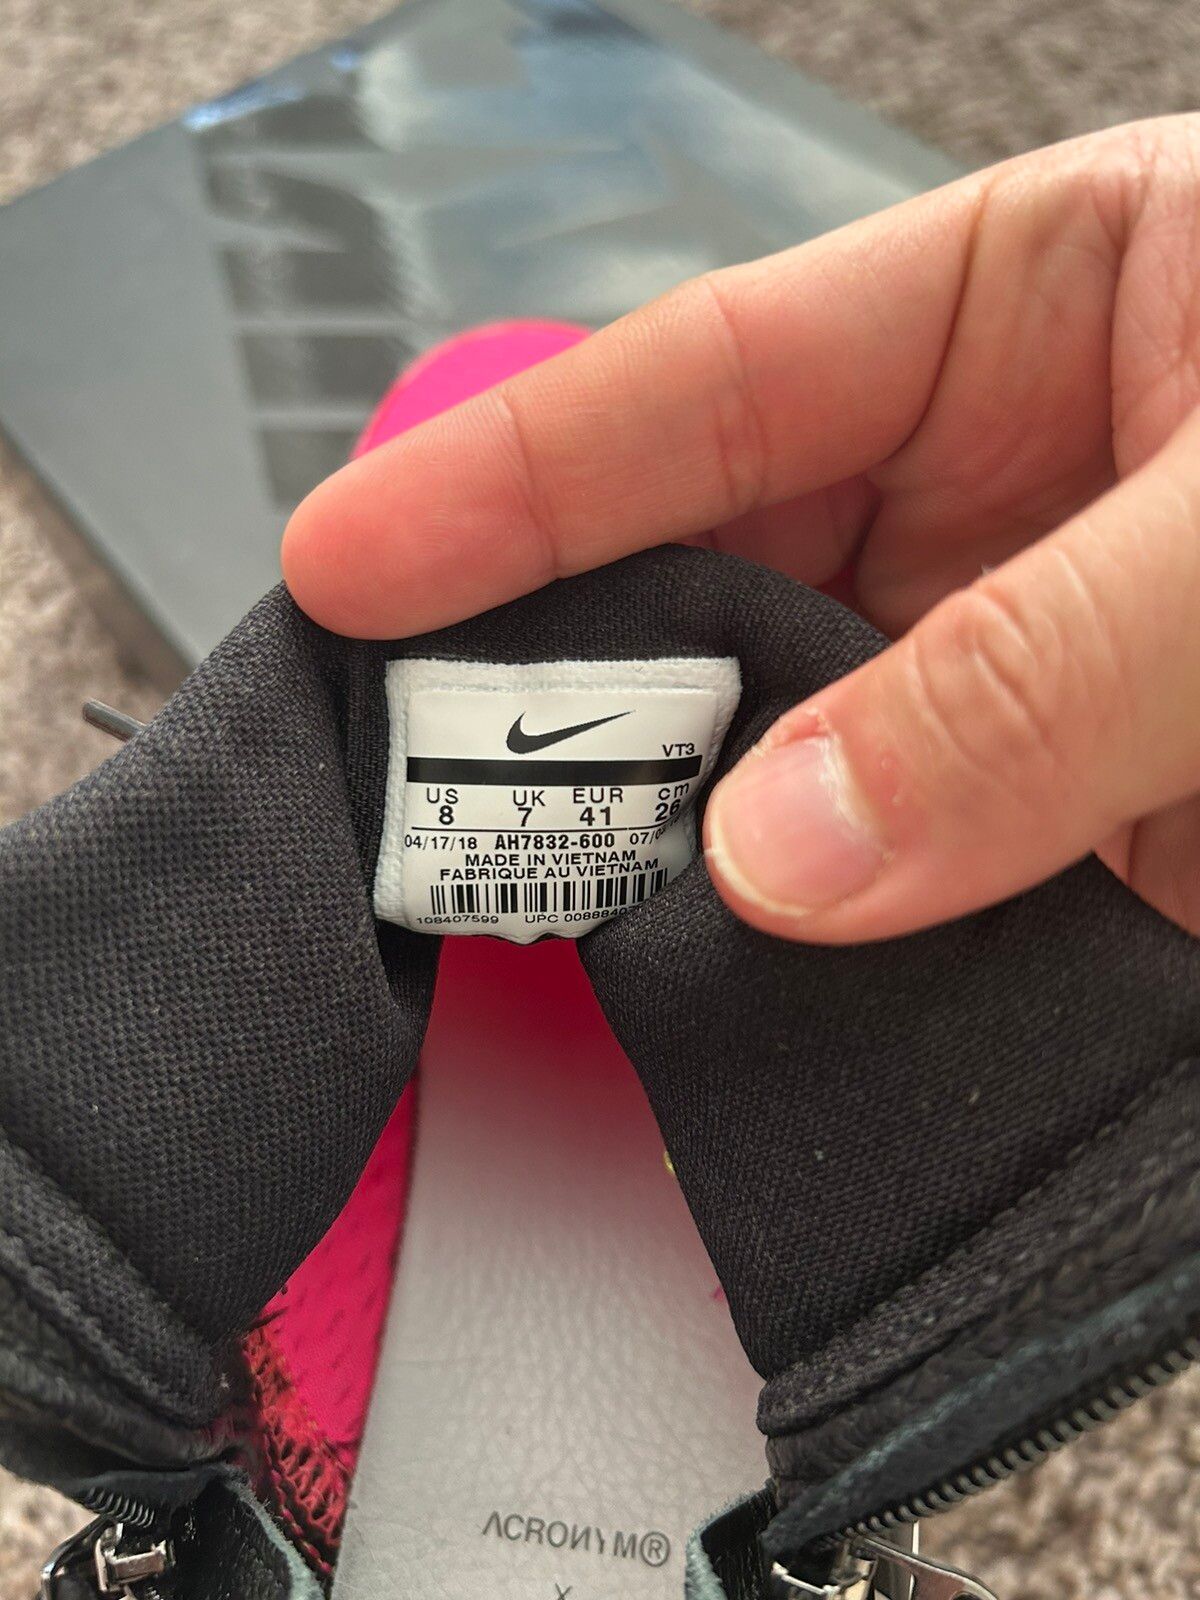 Nike Acronym Air Presto Racer Pink Size US 8 / EU 41 - 5 Thumbnail